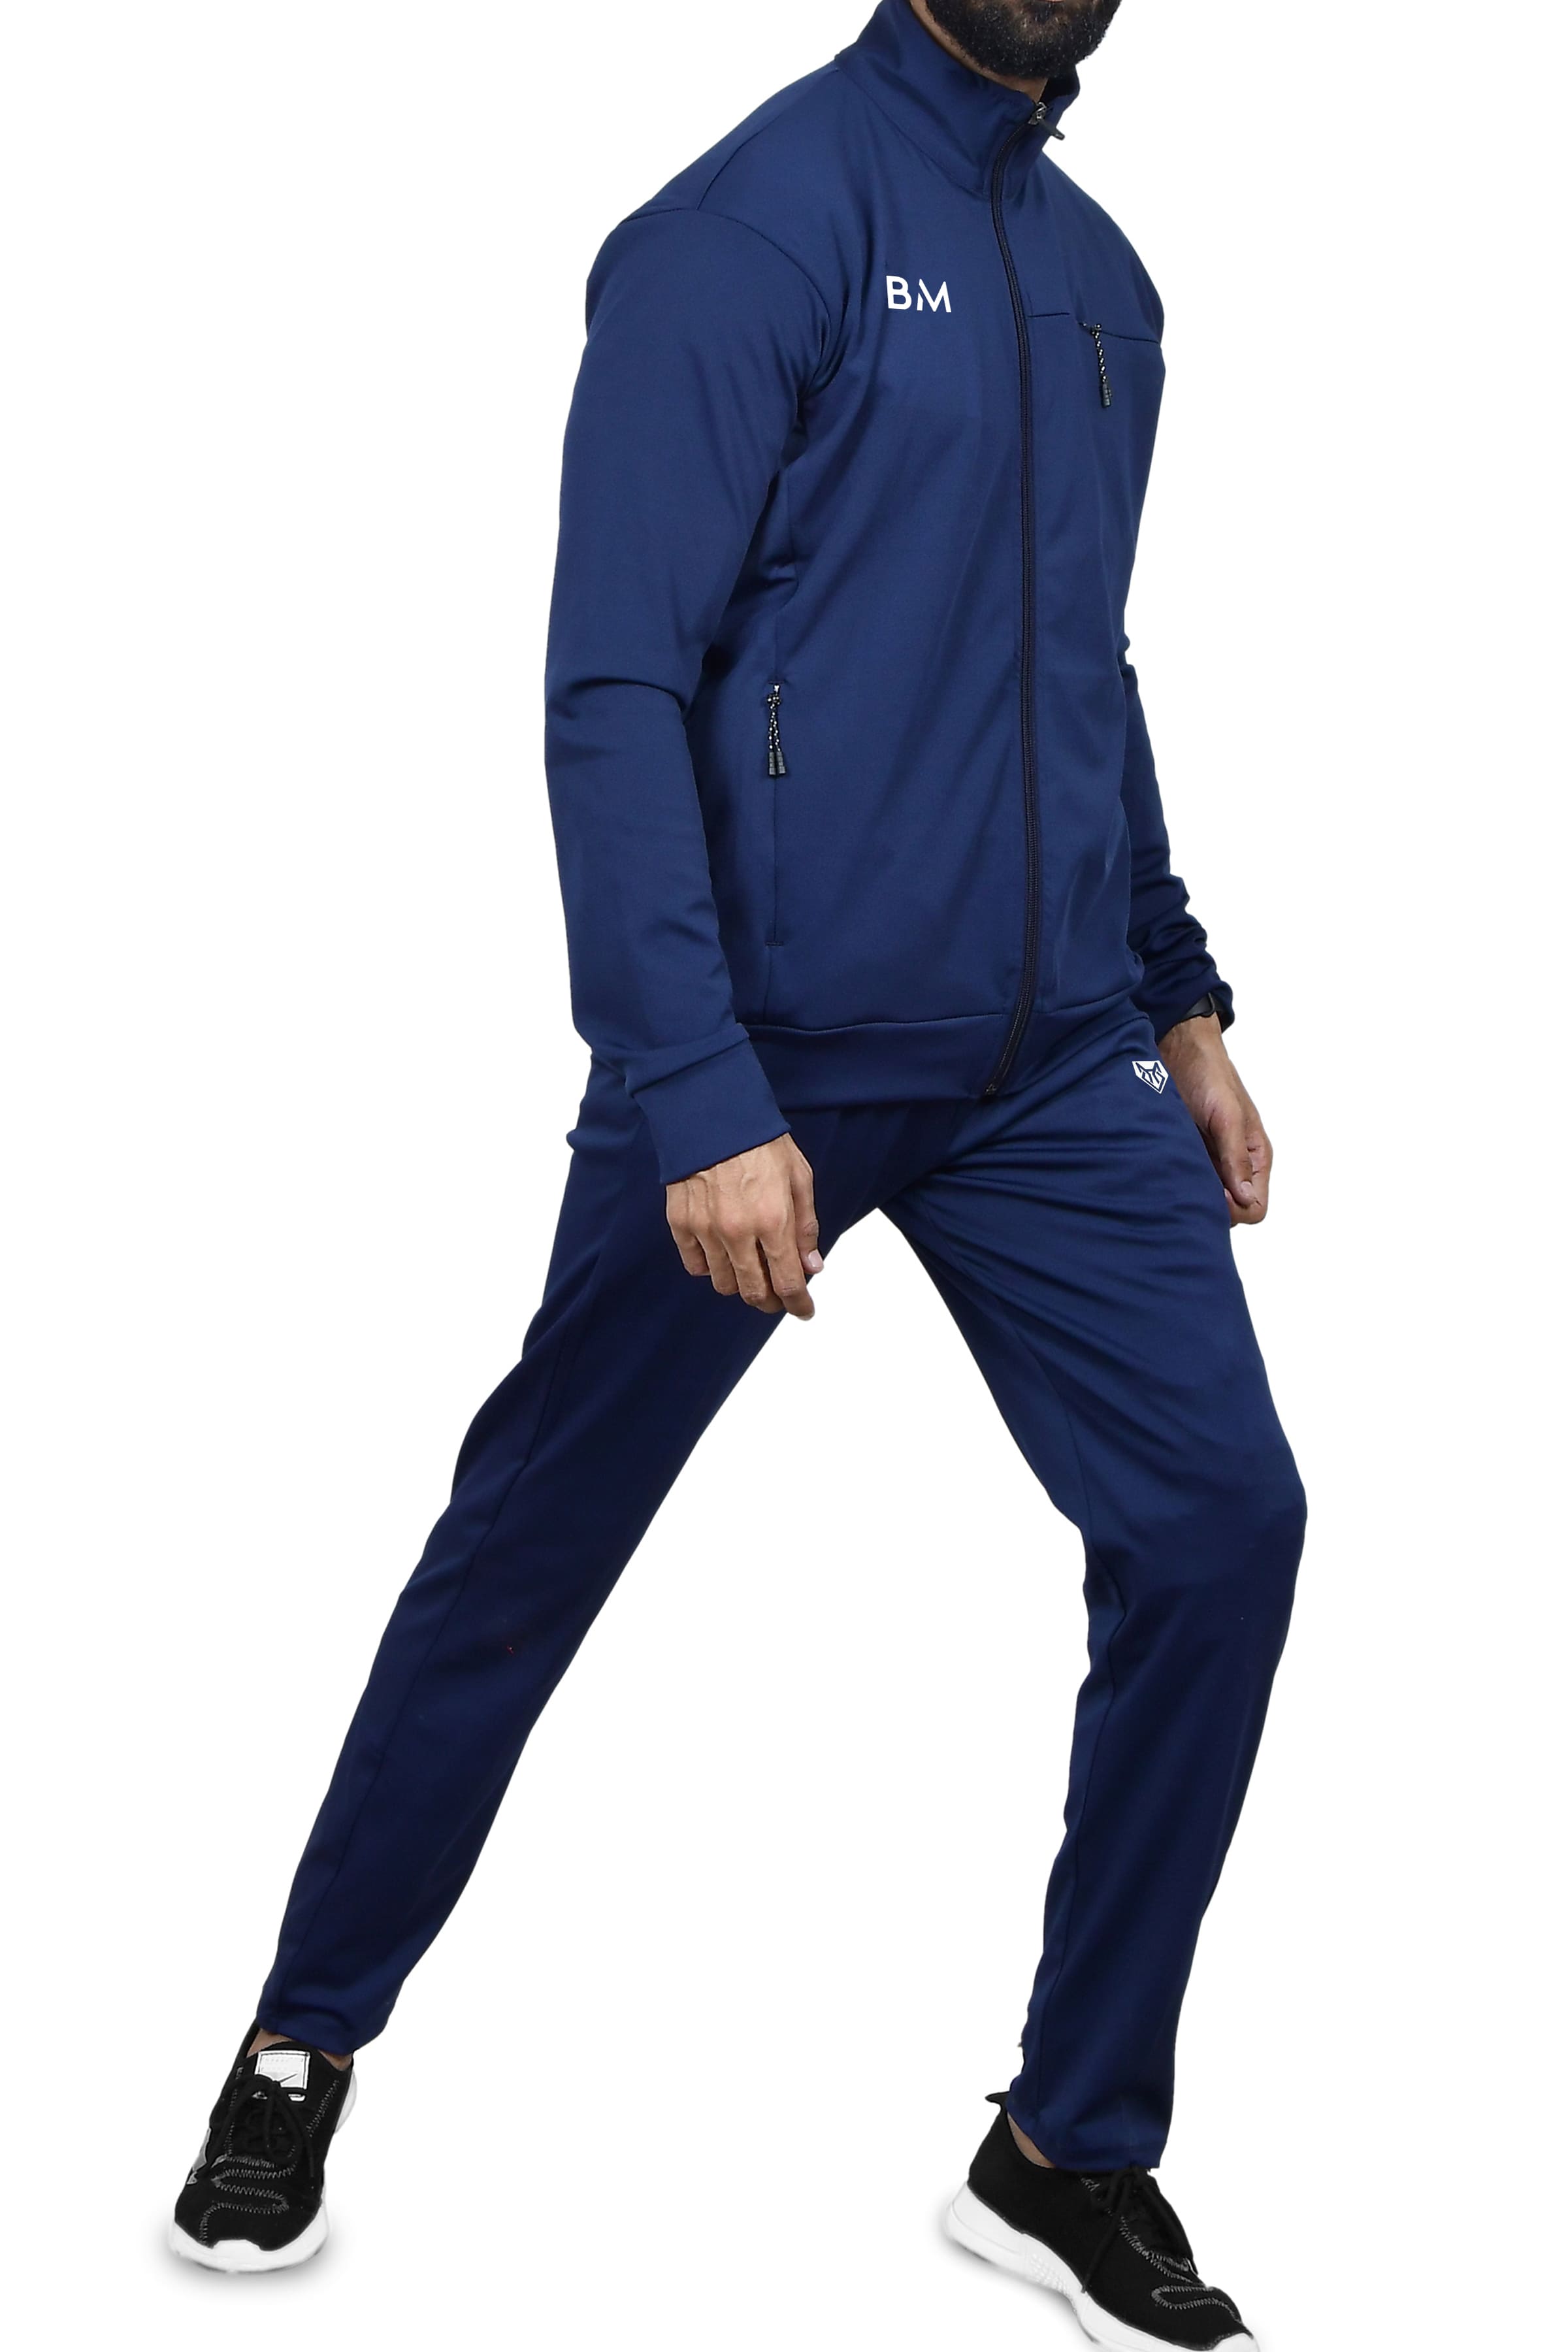 Premium Full Sleeves Zipper Tracksuit for Men - Athlete Wear Men's Tracksuit